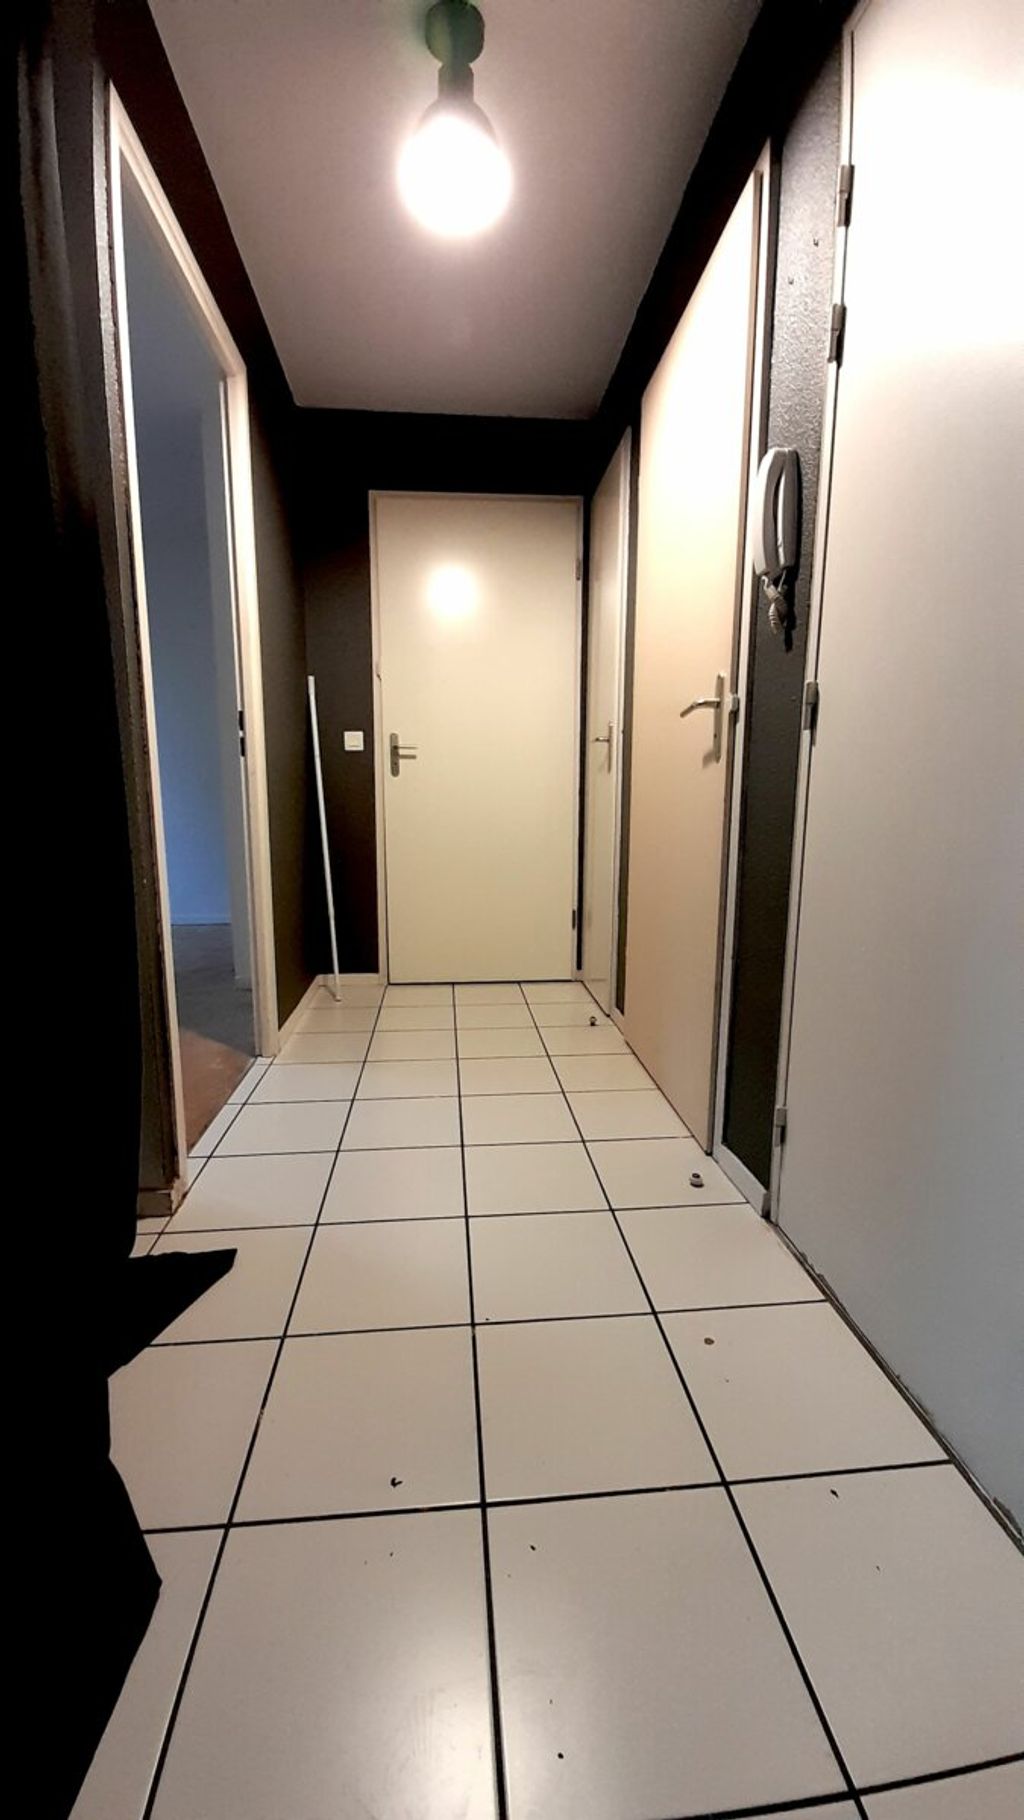 Achat appartement 2 pièce(s) Rouen